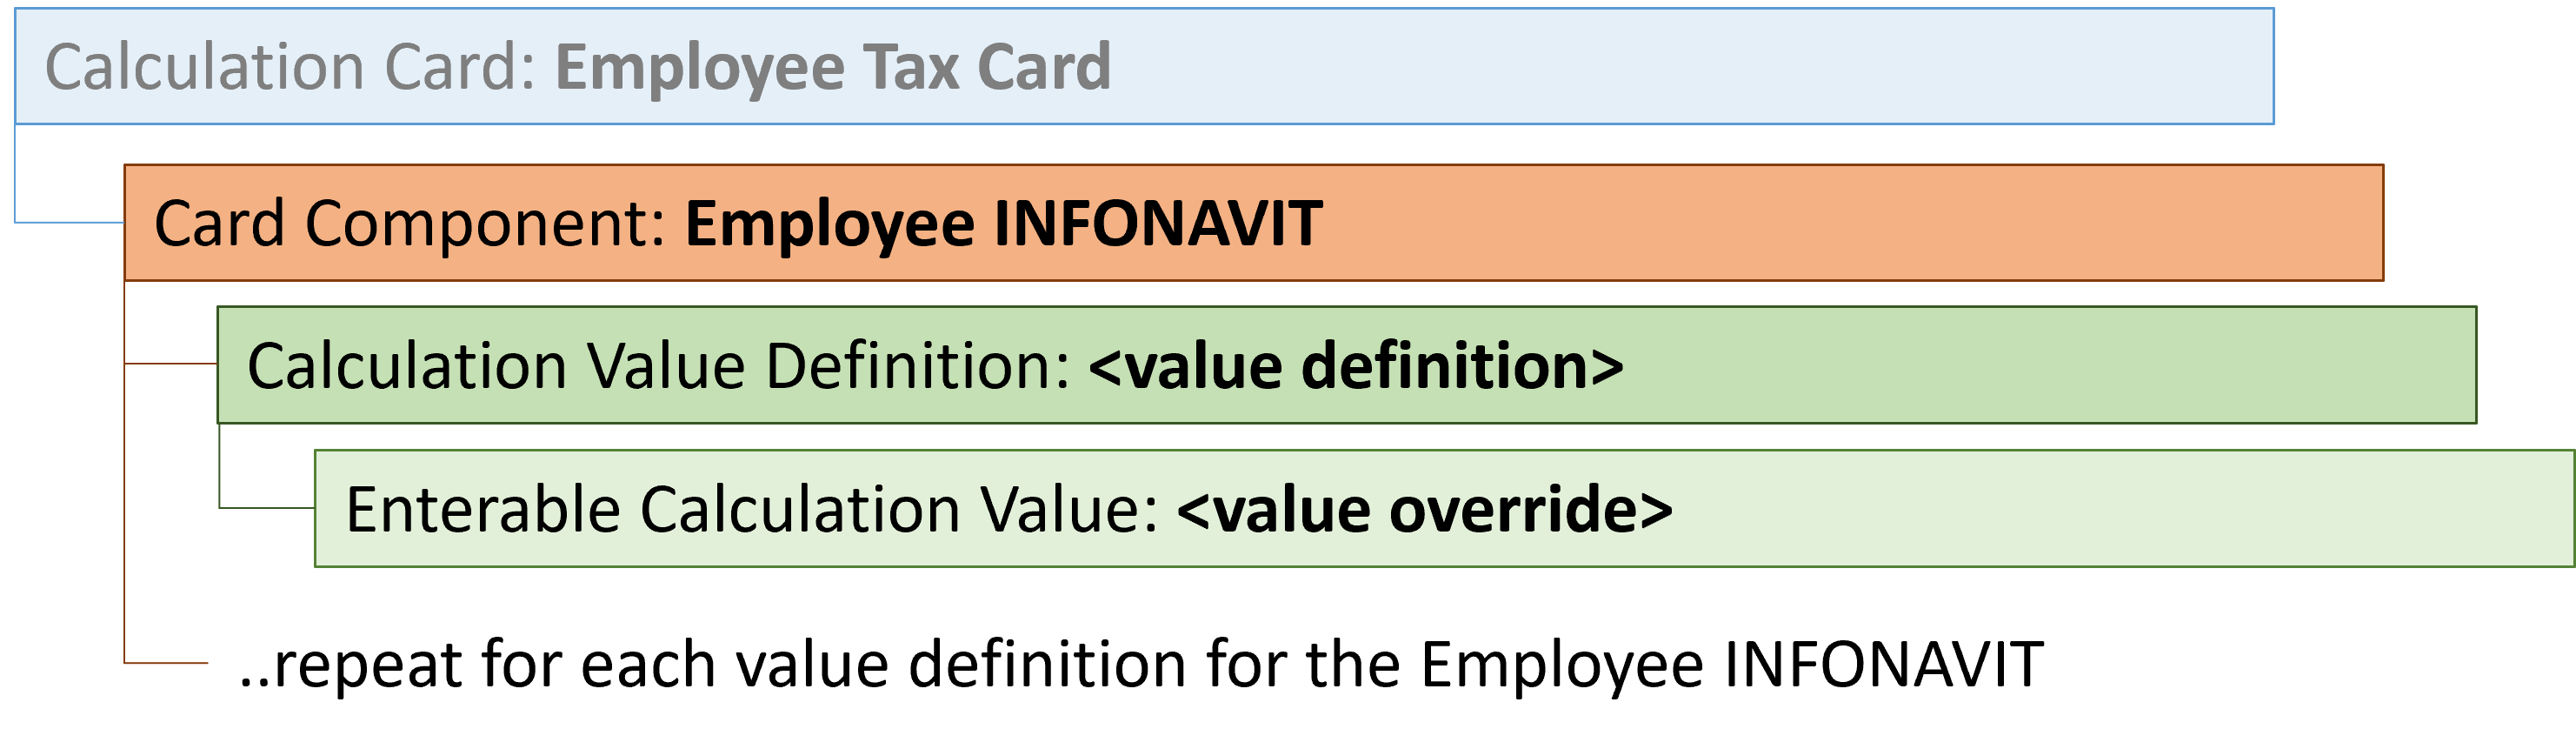 employee tax card employee infonavit card comp